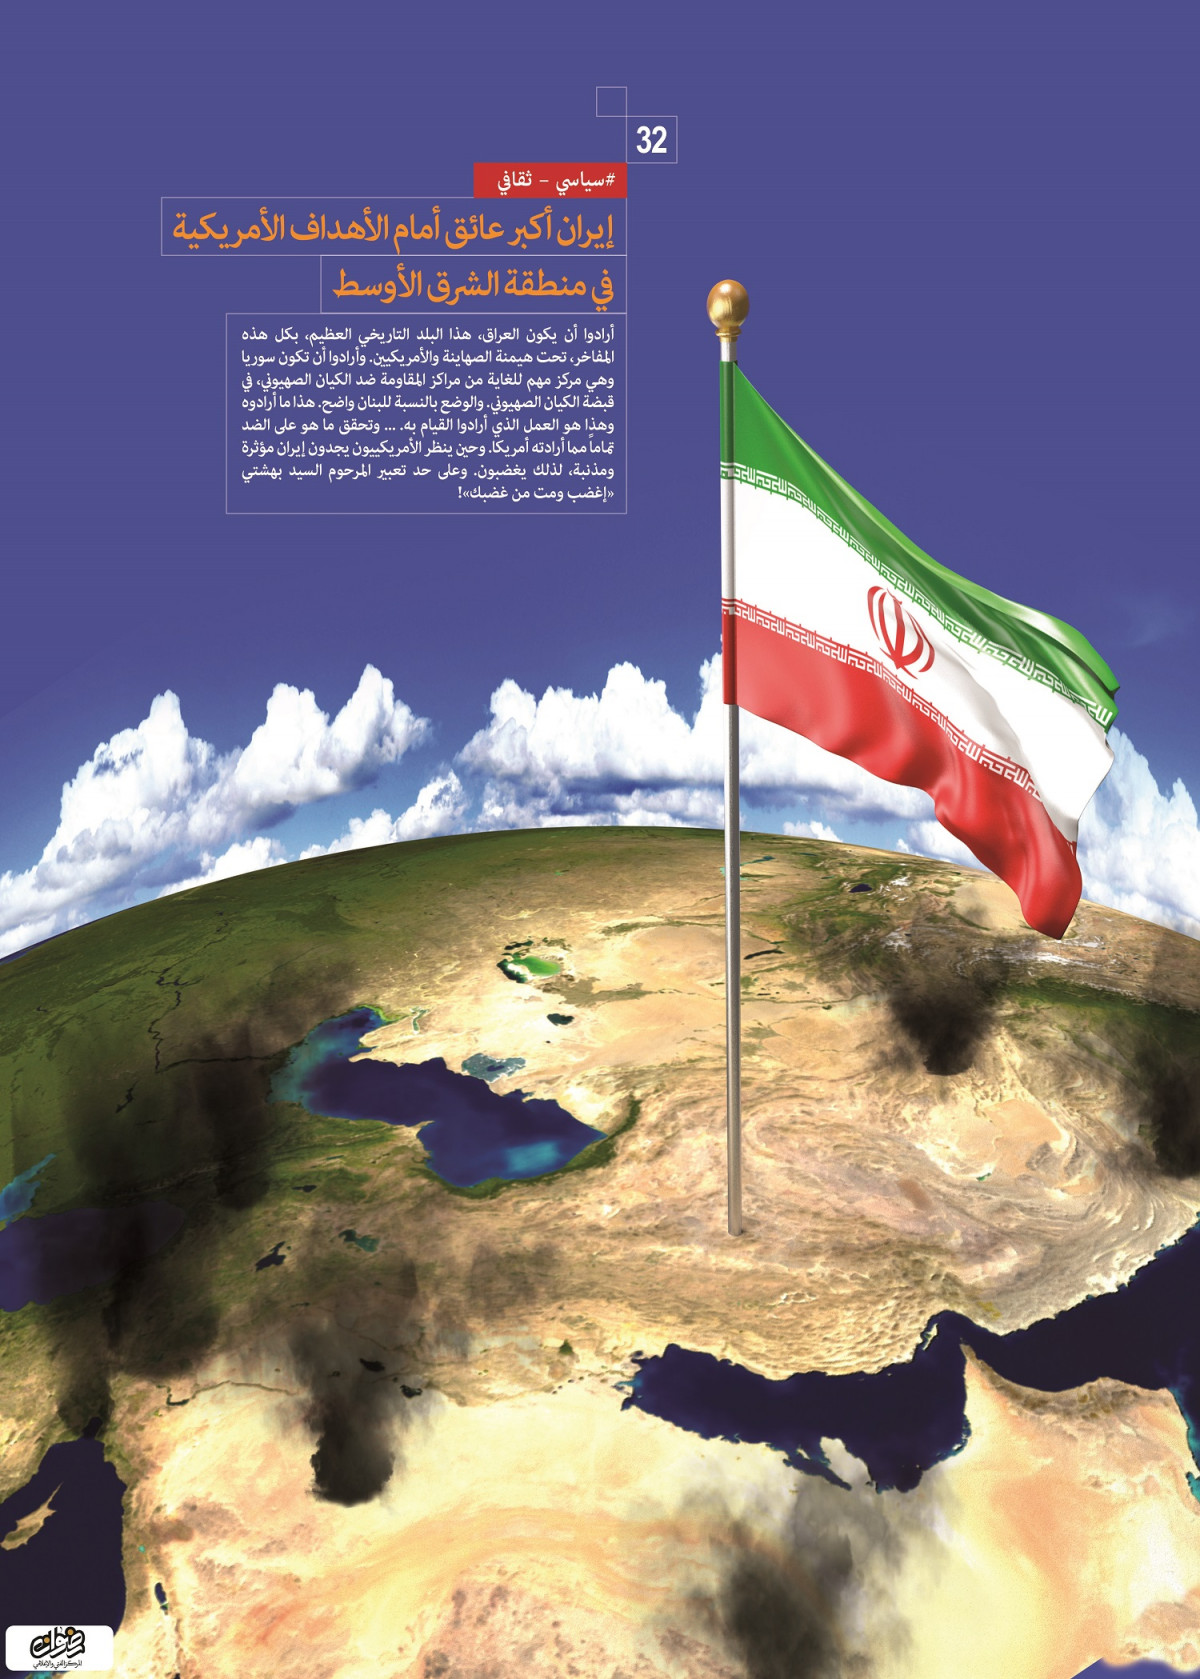 إنجازات السياسية والثقافية / إيران أكبر عائق أمام الأهداف الأمريكية في منطقة الشرق الأوسط